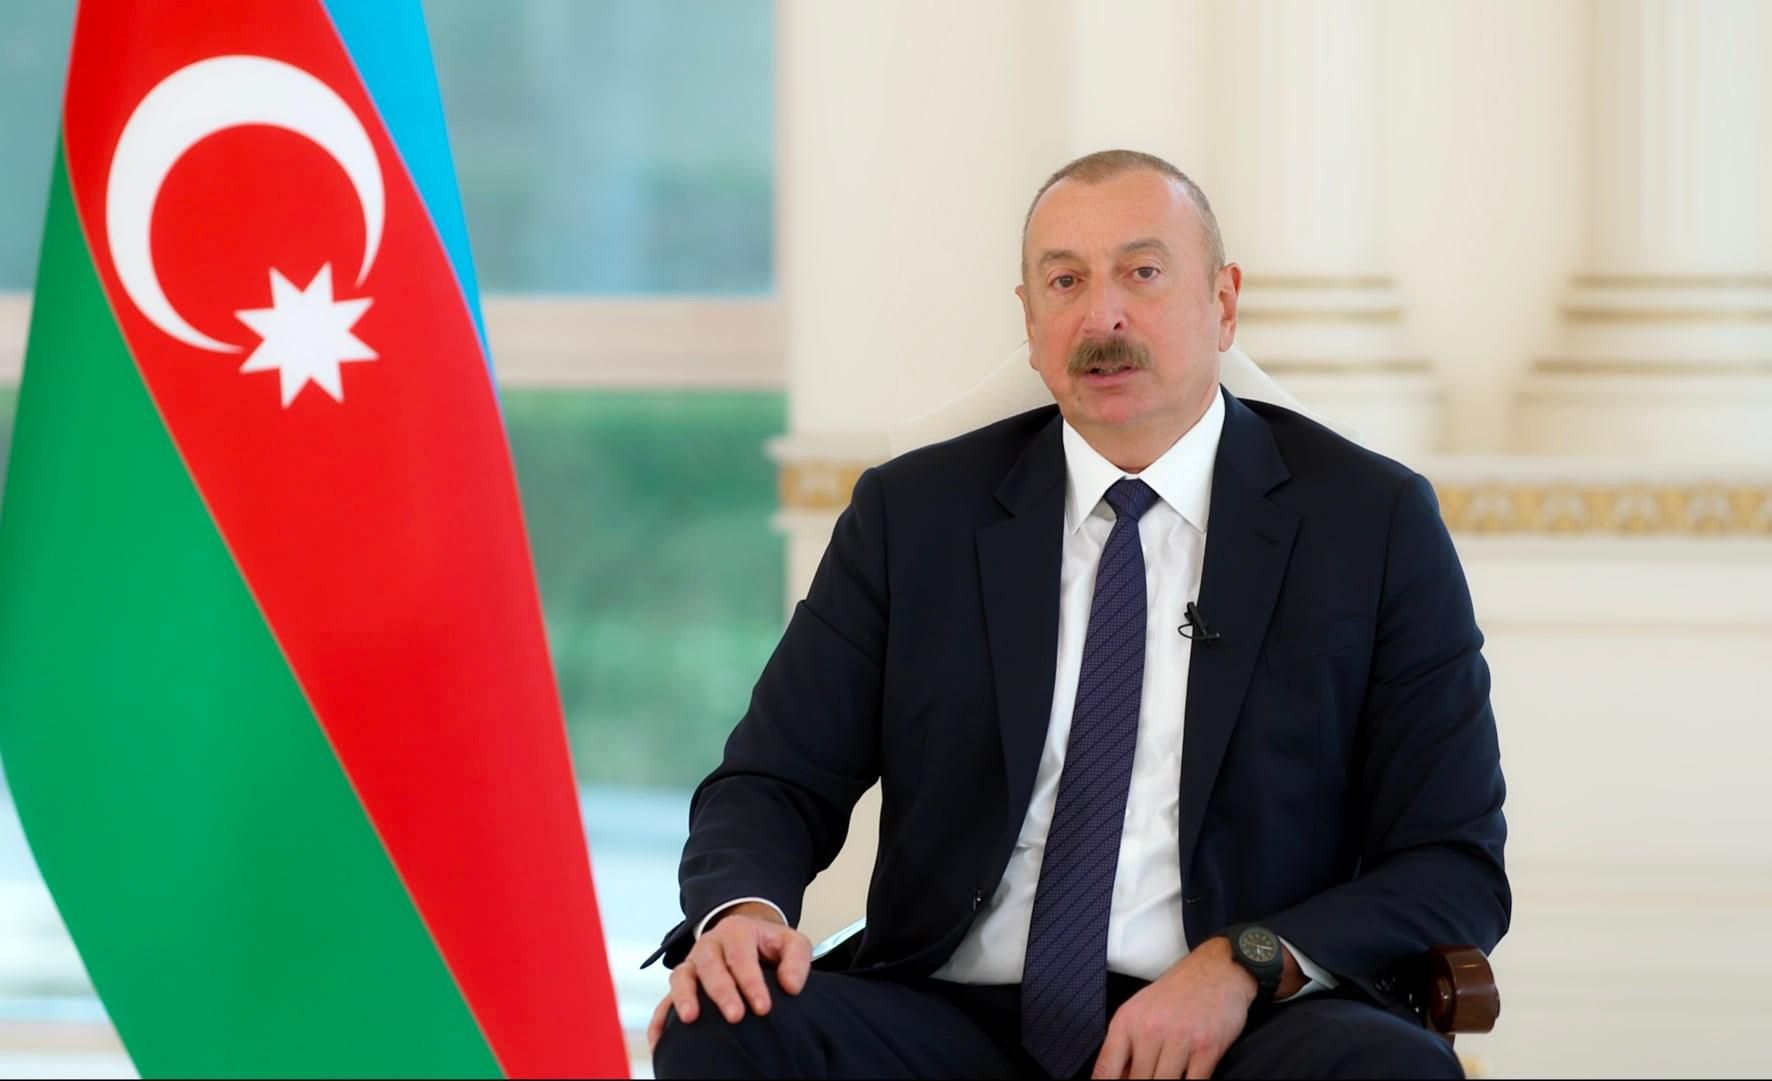 Уже до 8 погибших: президент Азербайджана приказал остановить обстрел с Арменией